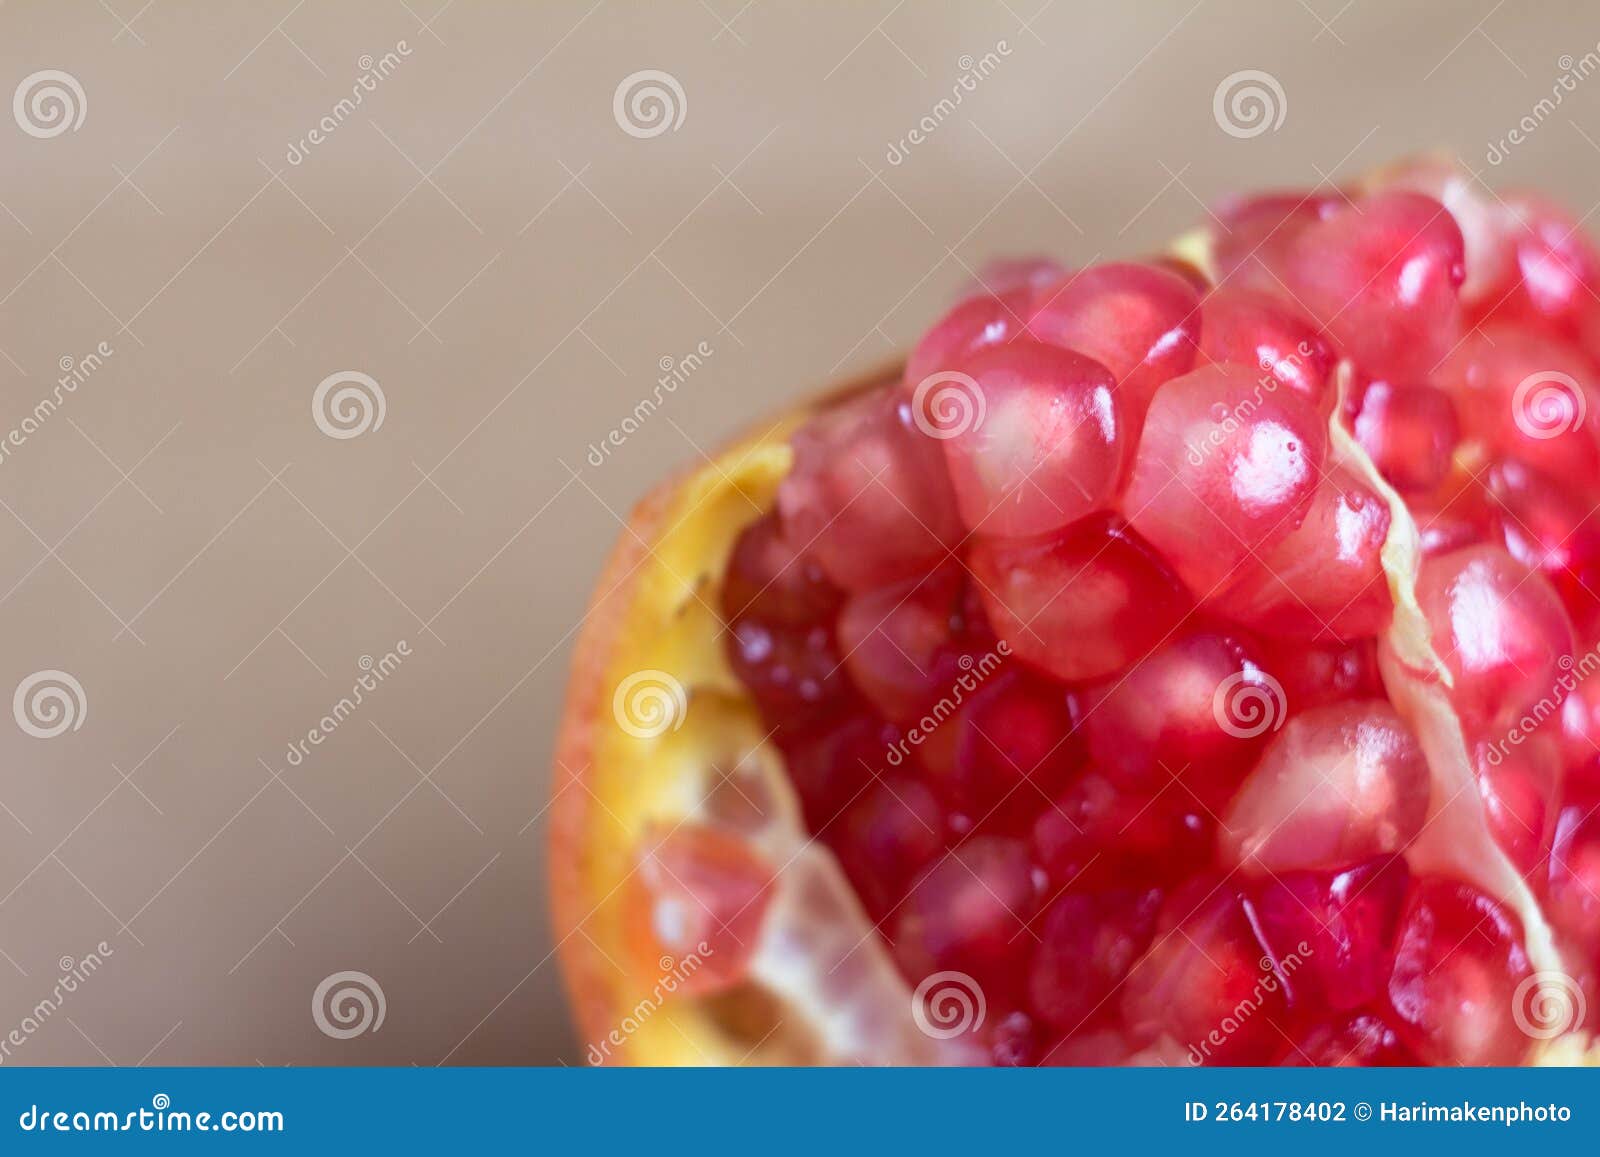 Extreme Close Up Of Juicy Pomegranate Fruit Seeds Stock Photo Image